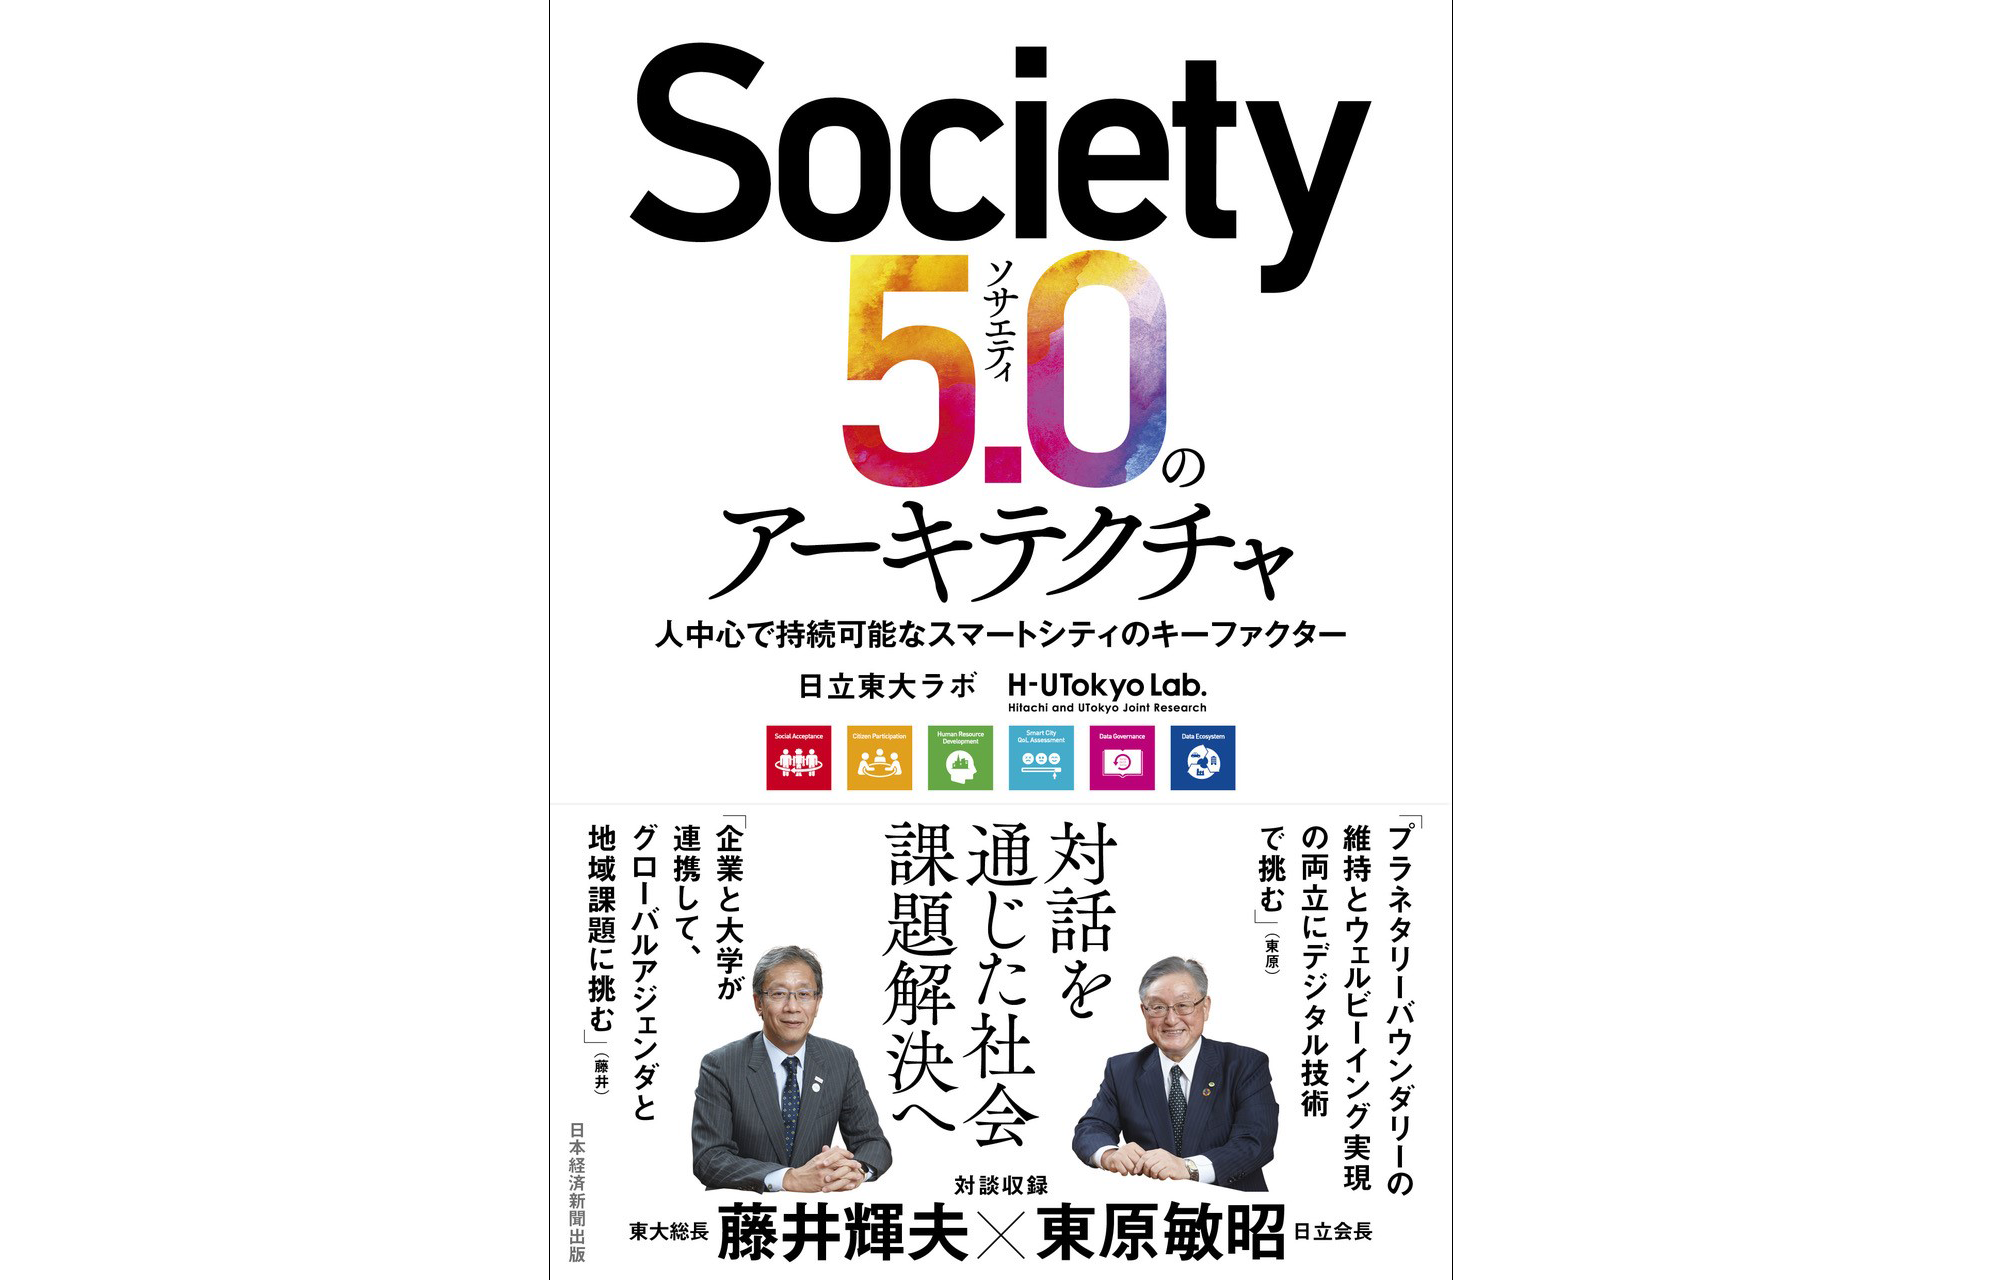 書籍「Society 5.0のアーキテクチャ 人中心で持続可能なスマートシティのキーファクター」を日経BP/日本経済新聞出版より出版しました。